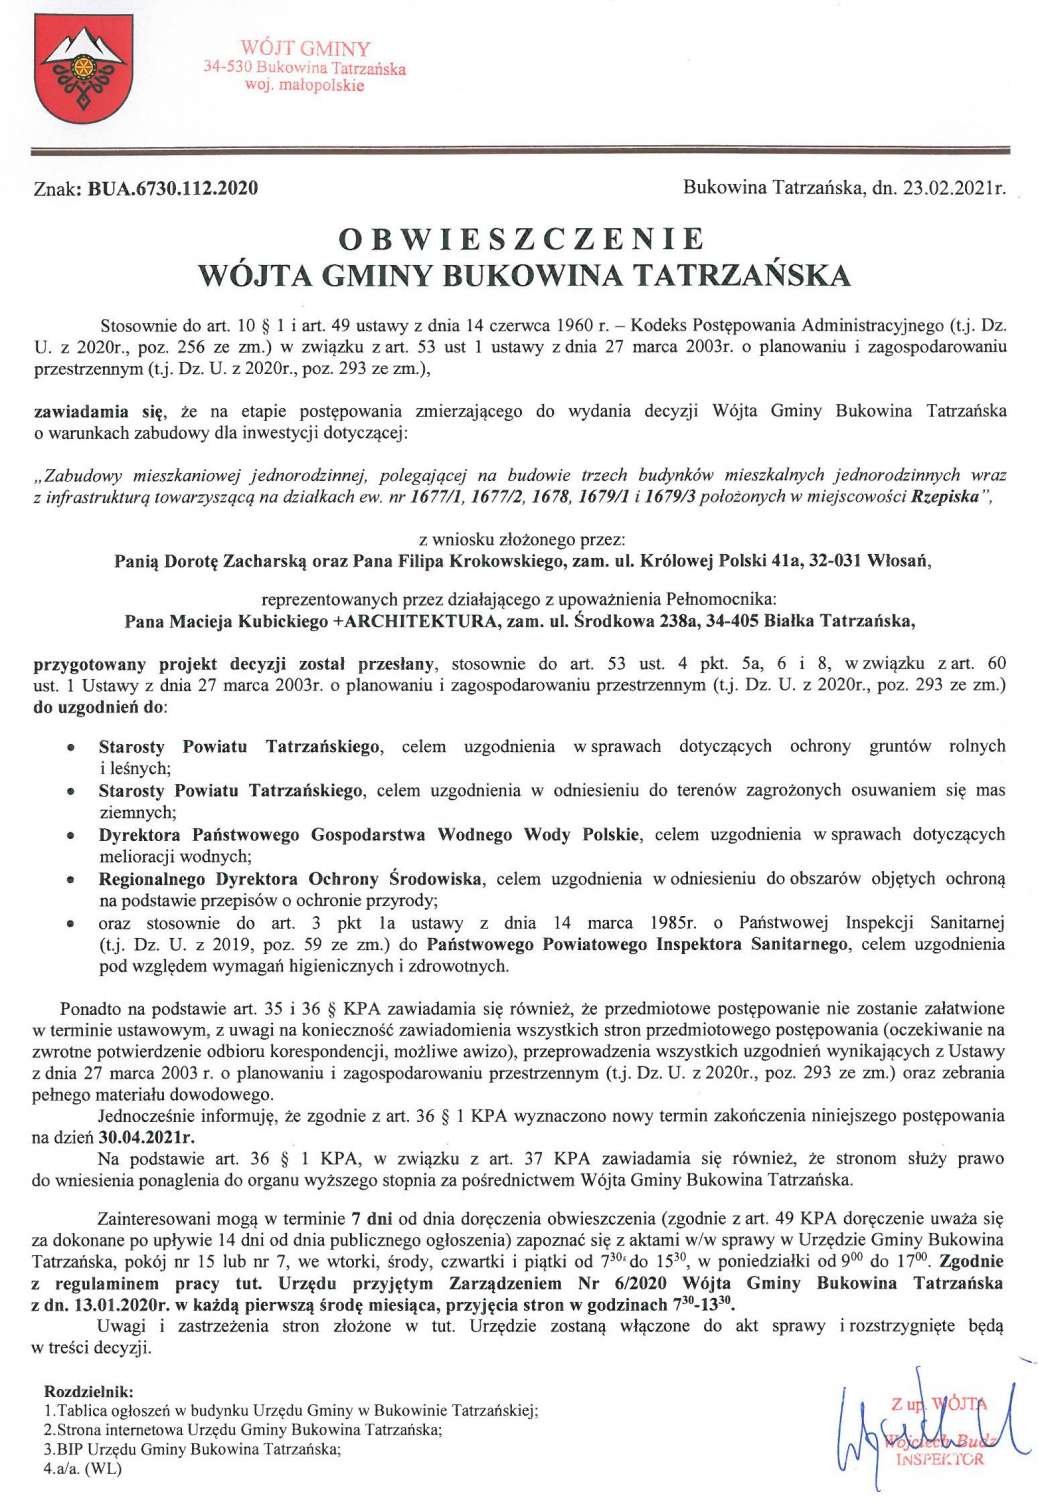 Obwieszczenie Wójta Gminy Bukowina Tatrzańska BUA 6730.112.2020